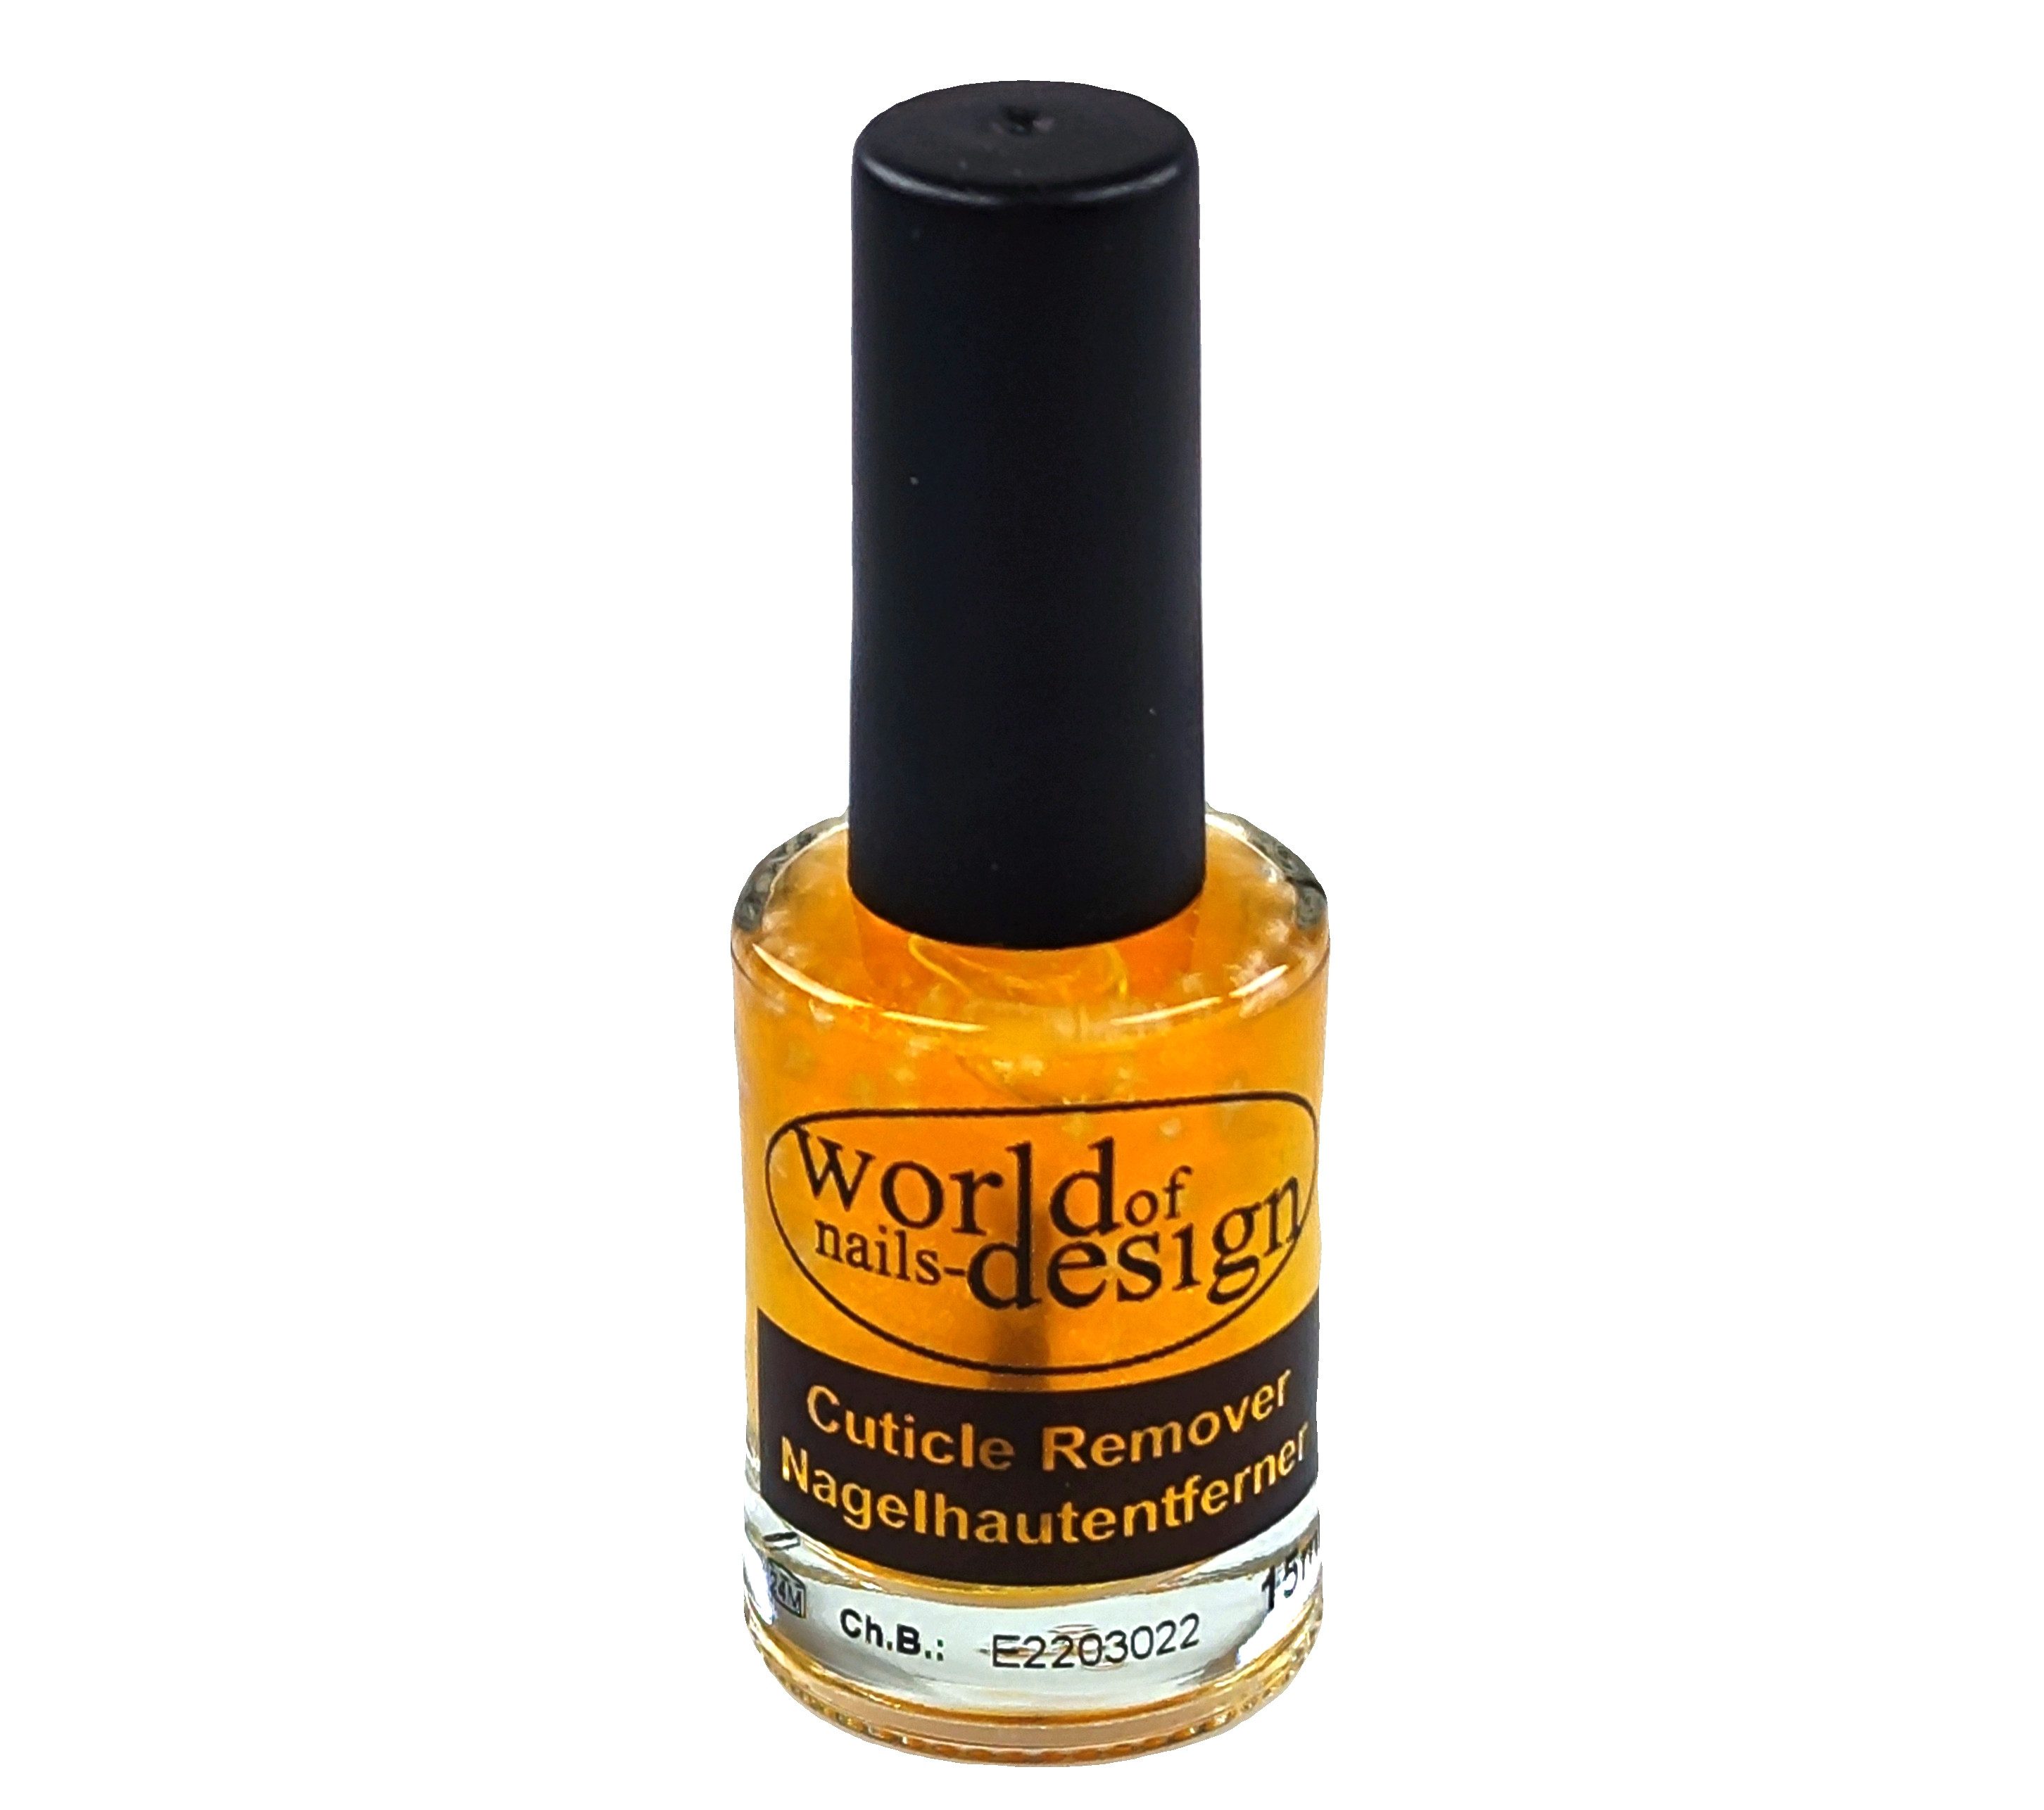 World of Nails-Design Nageldesign Zubehör Nagelhaut Entferner, Cuticle Remover Orange 15ml, sanft und schonend